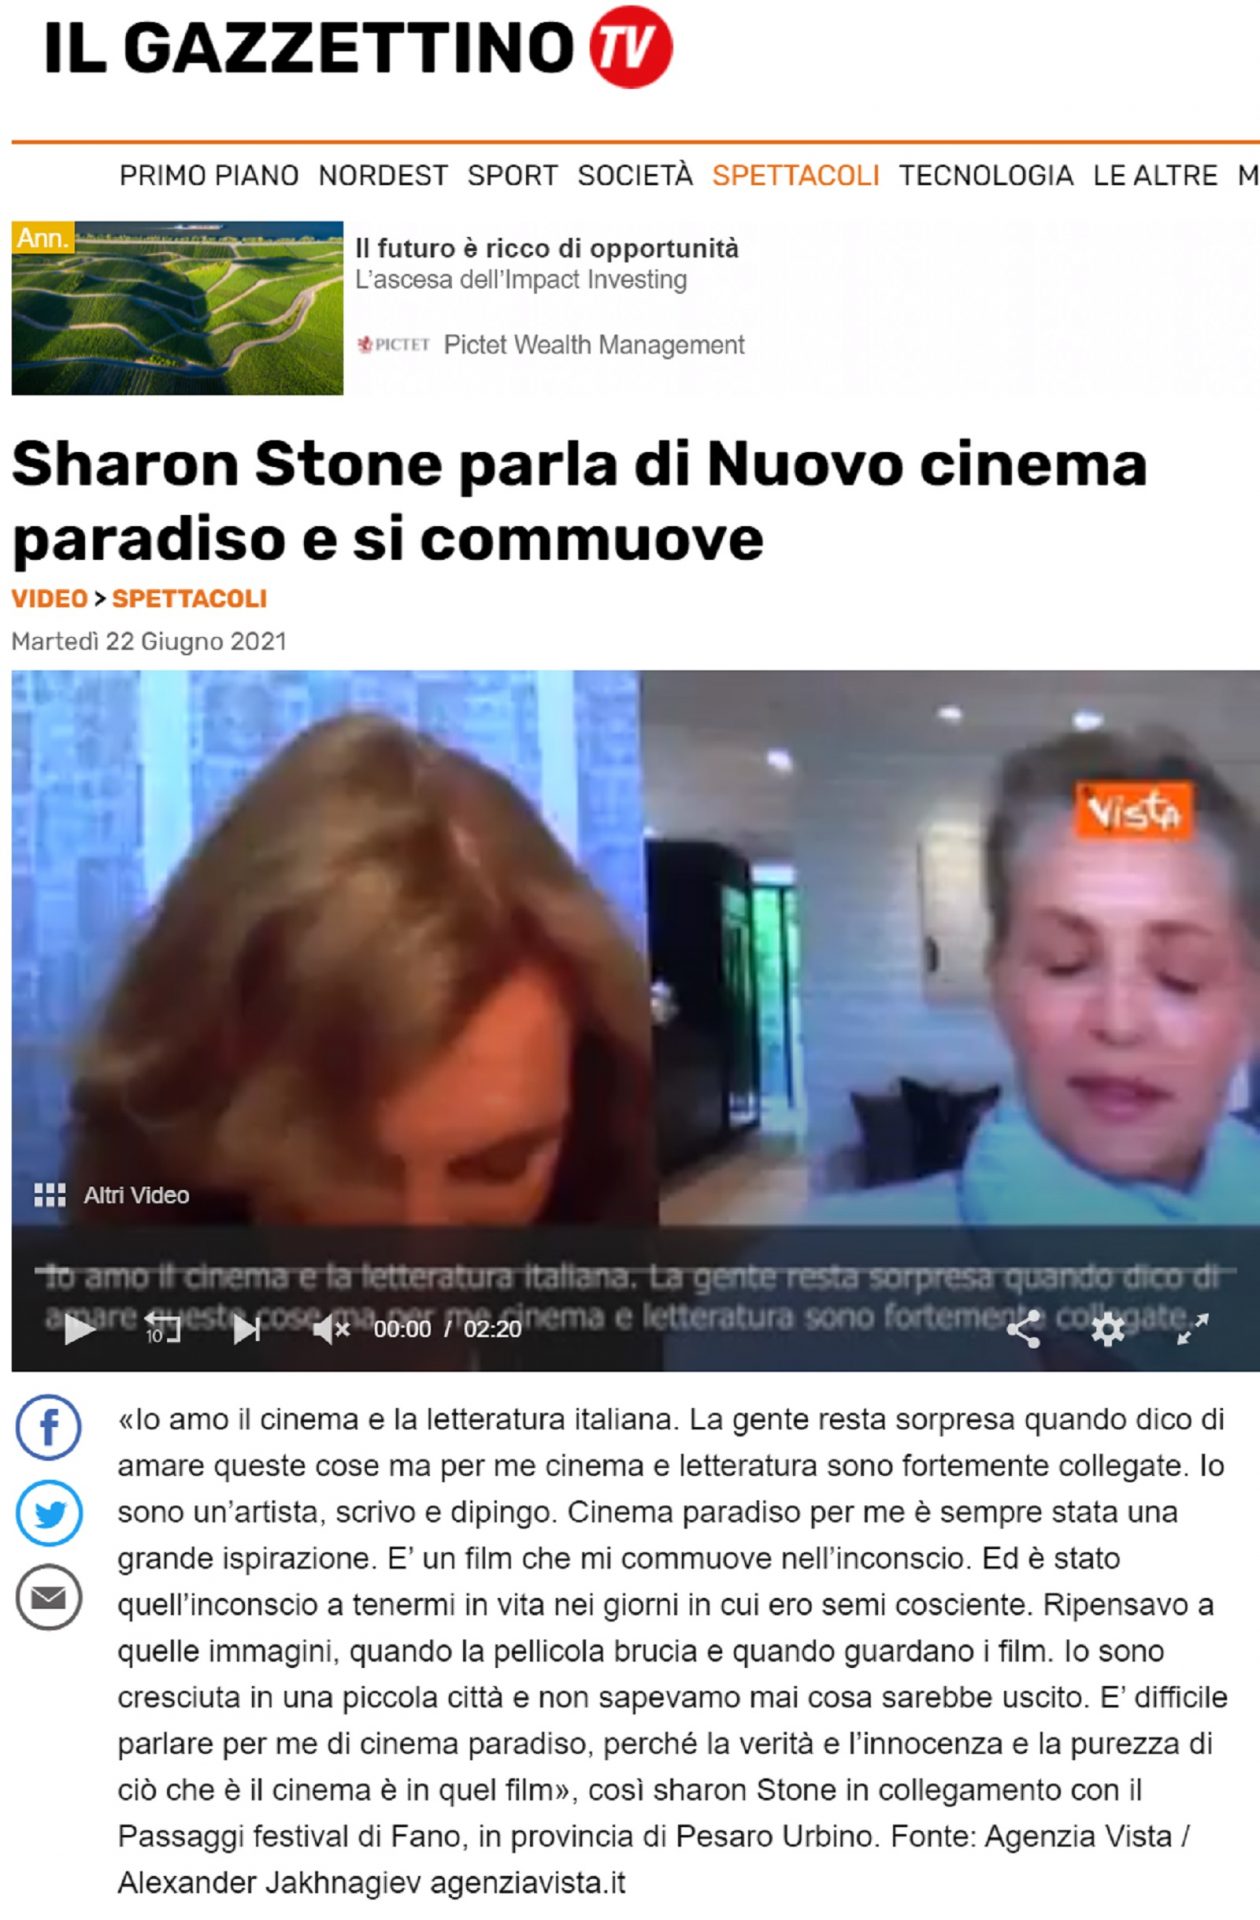 ilgazzettino-it-sharon-stone-parla-di-nuovo-cinema-paradiso-si-commuove-rappresenta-la-purezza-cinema